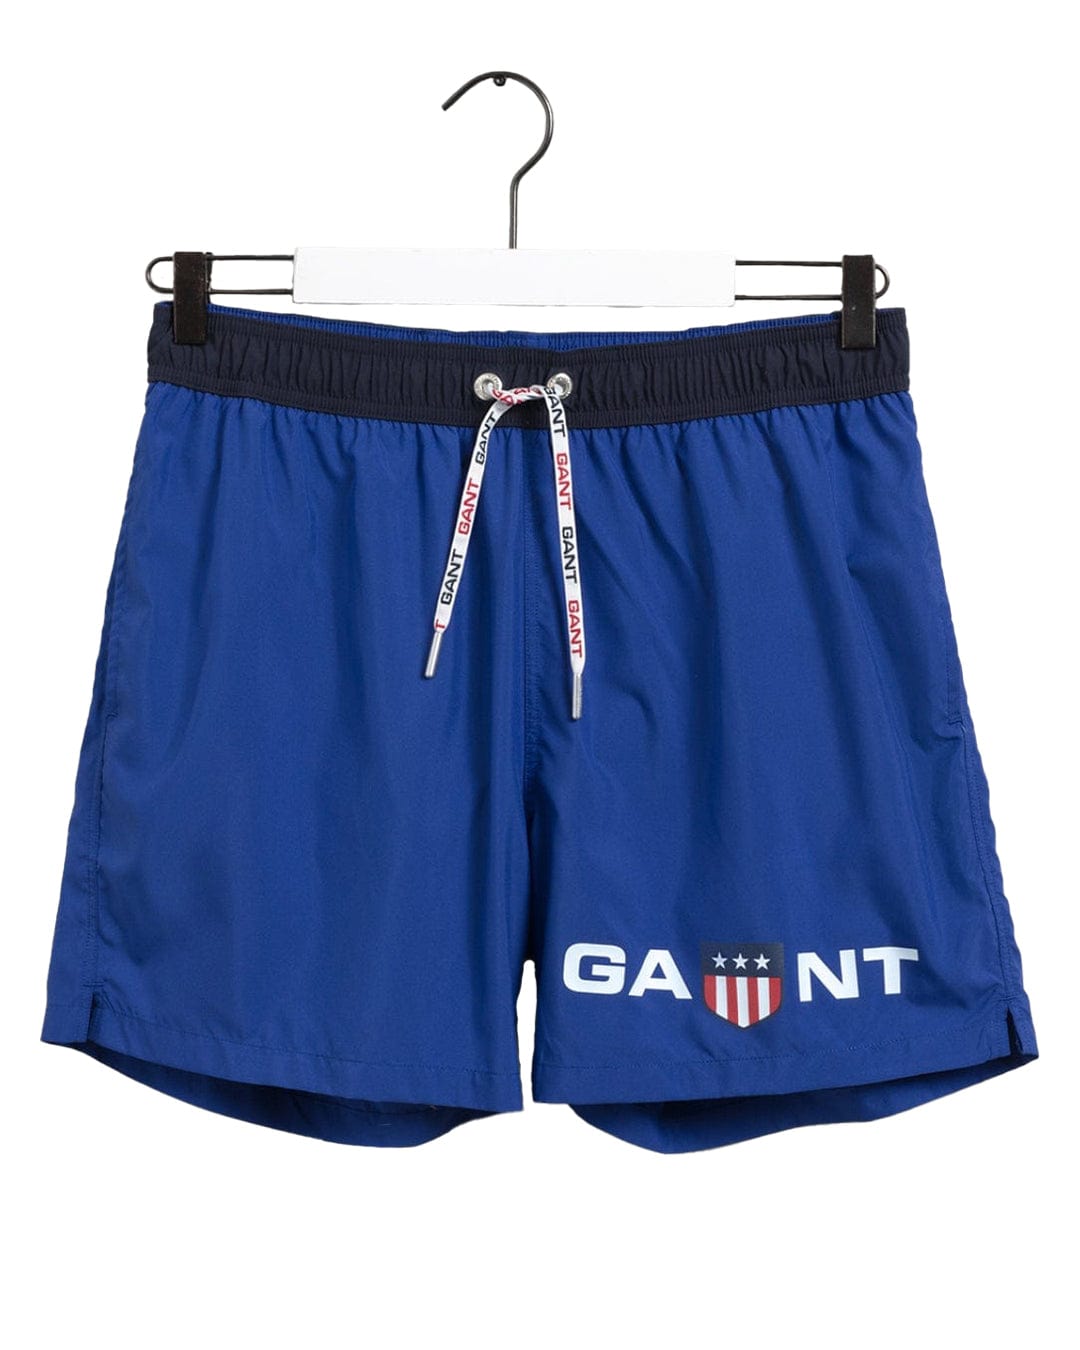 Gant Swimwear Gant Blue And Navy Retro Shield Swim Shorts